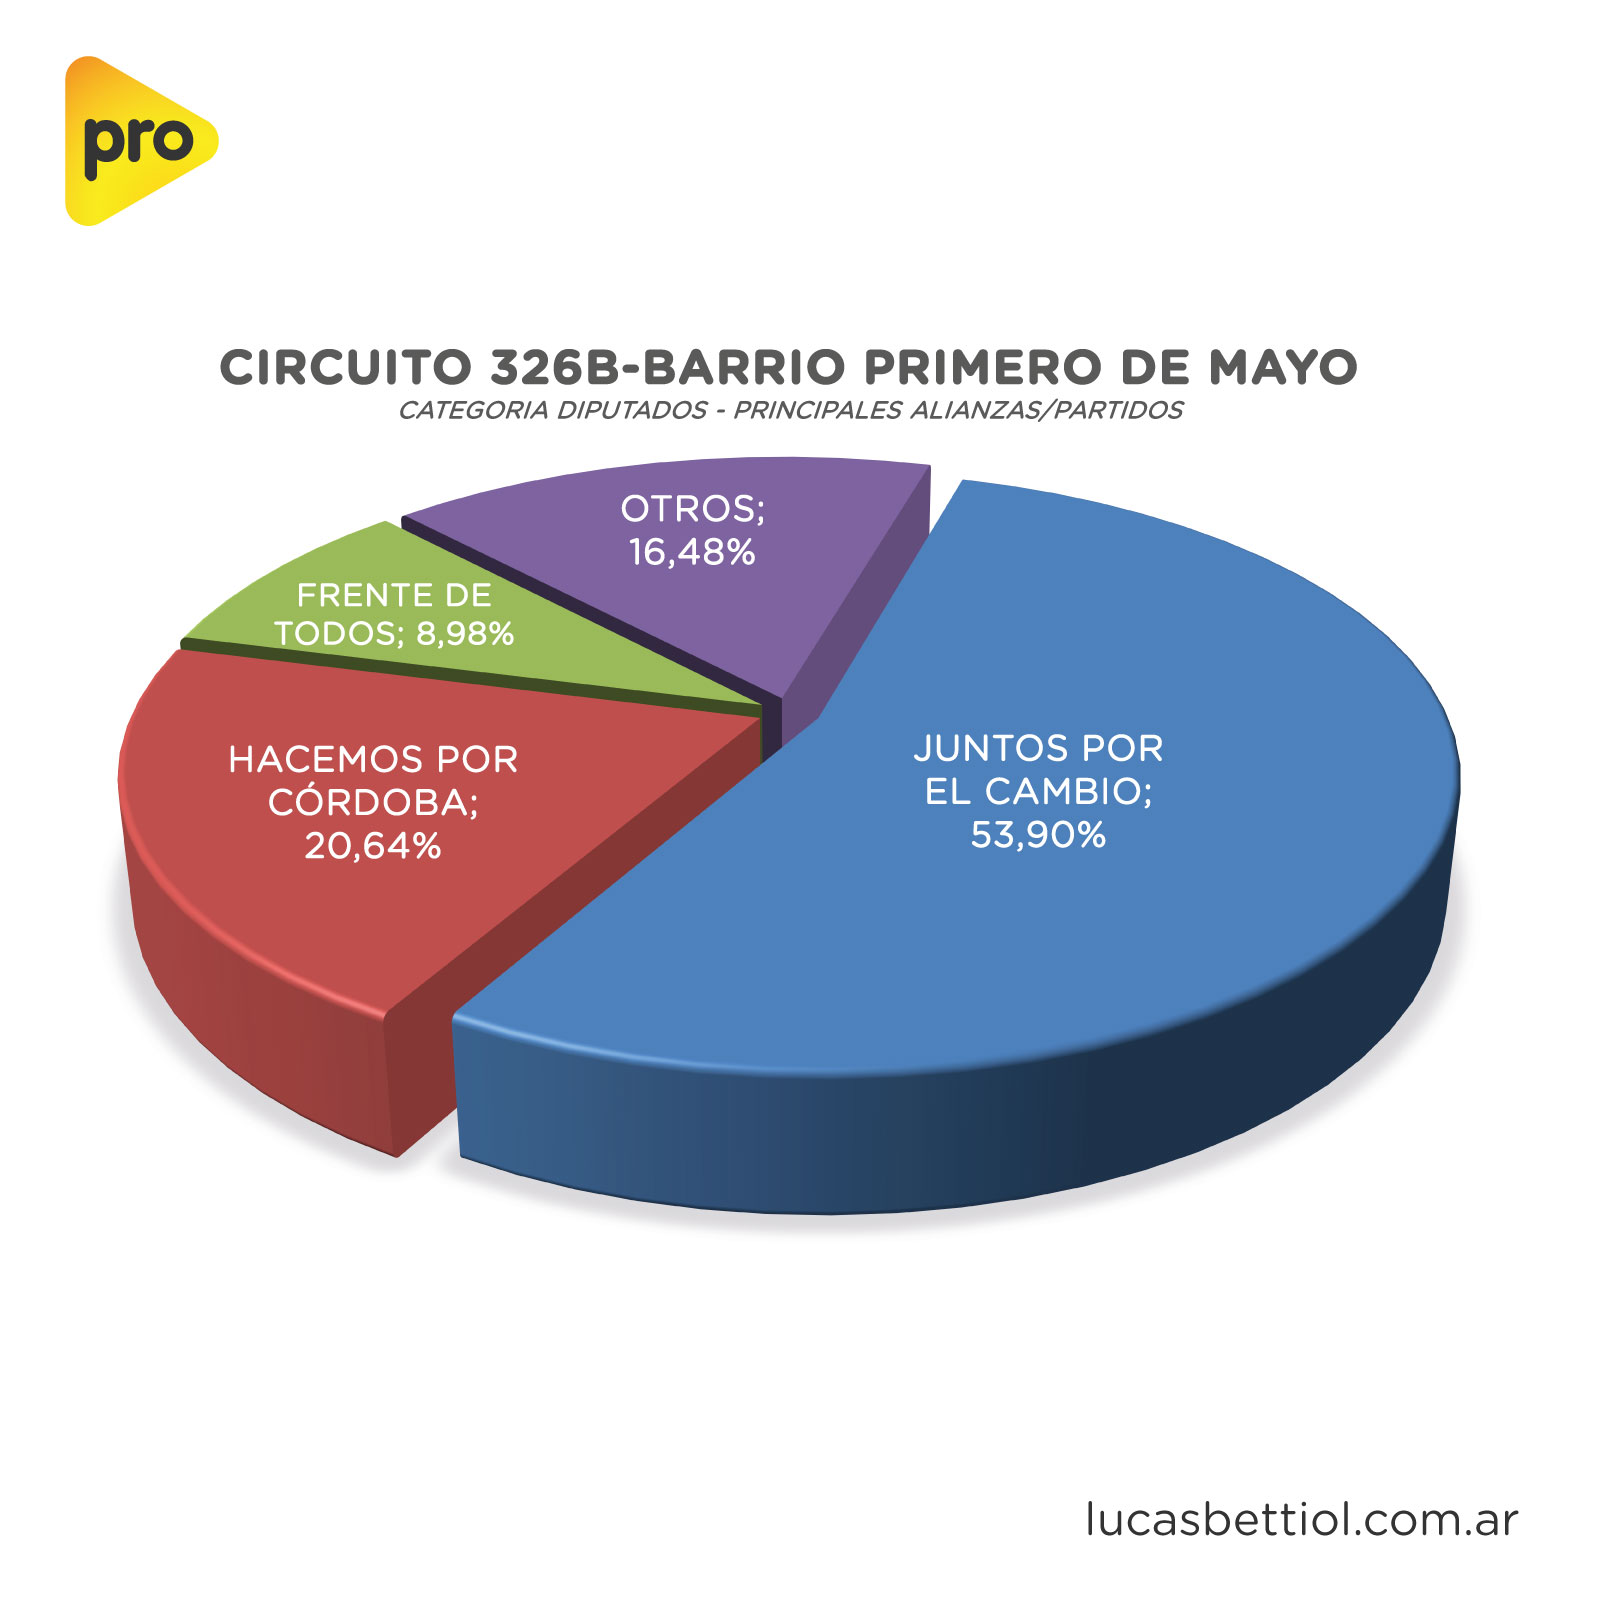 Elecciones PASO 2021 - Categoría Diputados - Gráfica de porcentuales que obtuvieron en el circuito 326B-Barrio Primero de Mayo las principales alianzas